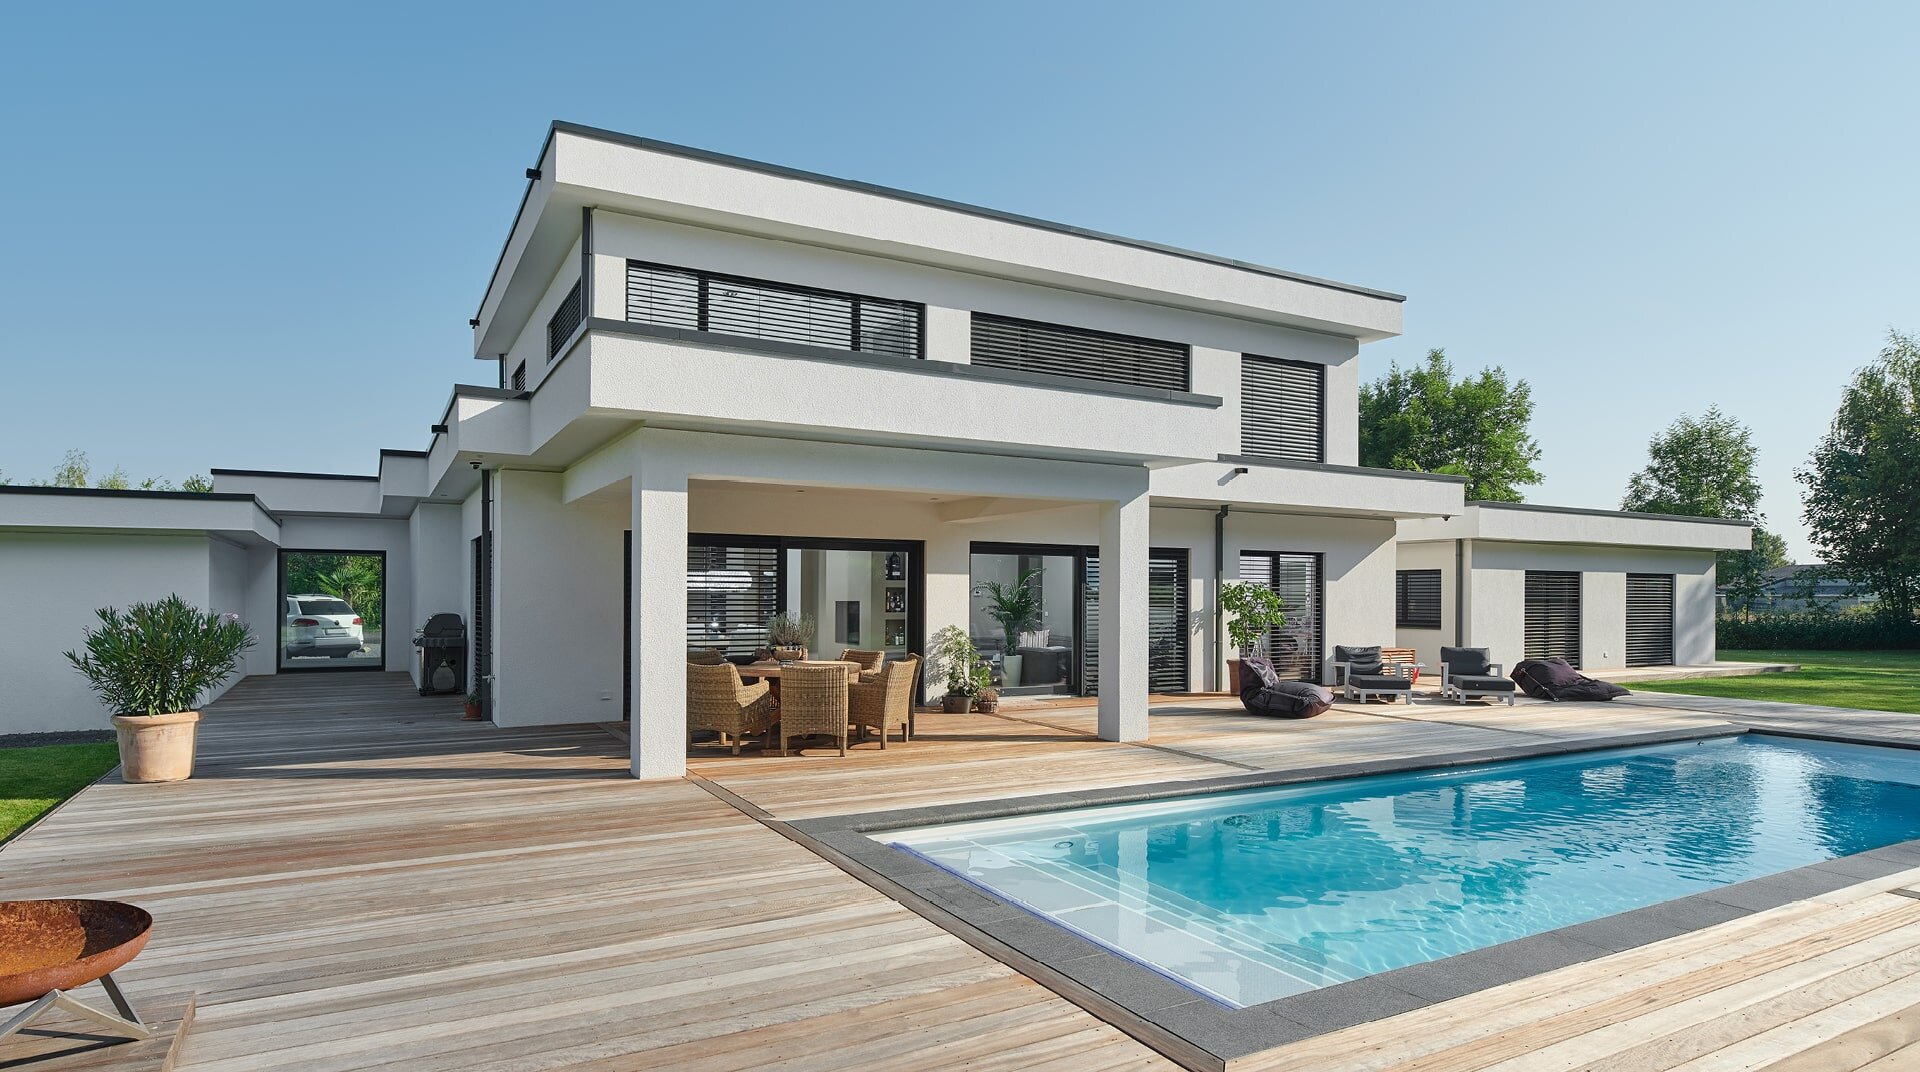 Flachdach 300 LUXHAUS Vertrieb GmbH & Co. KG, weißes Haus mit Flachdach, hinter Pool